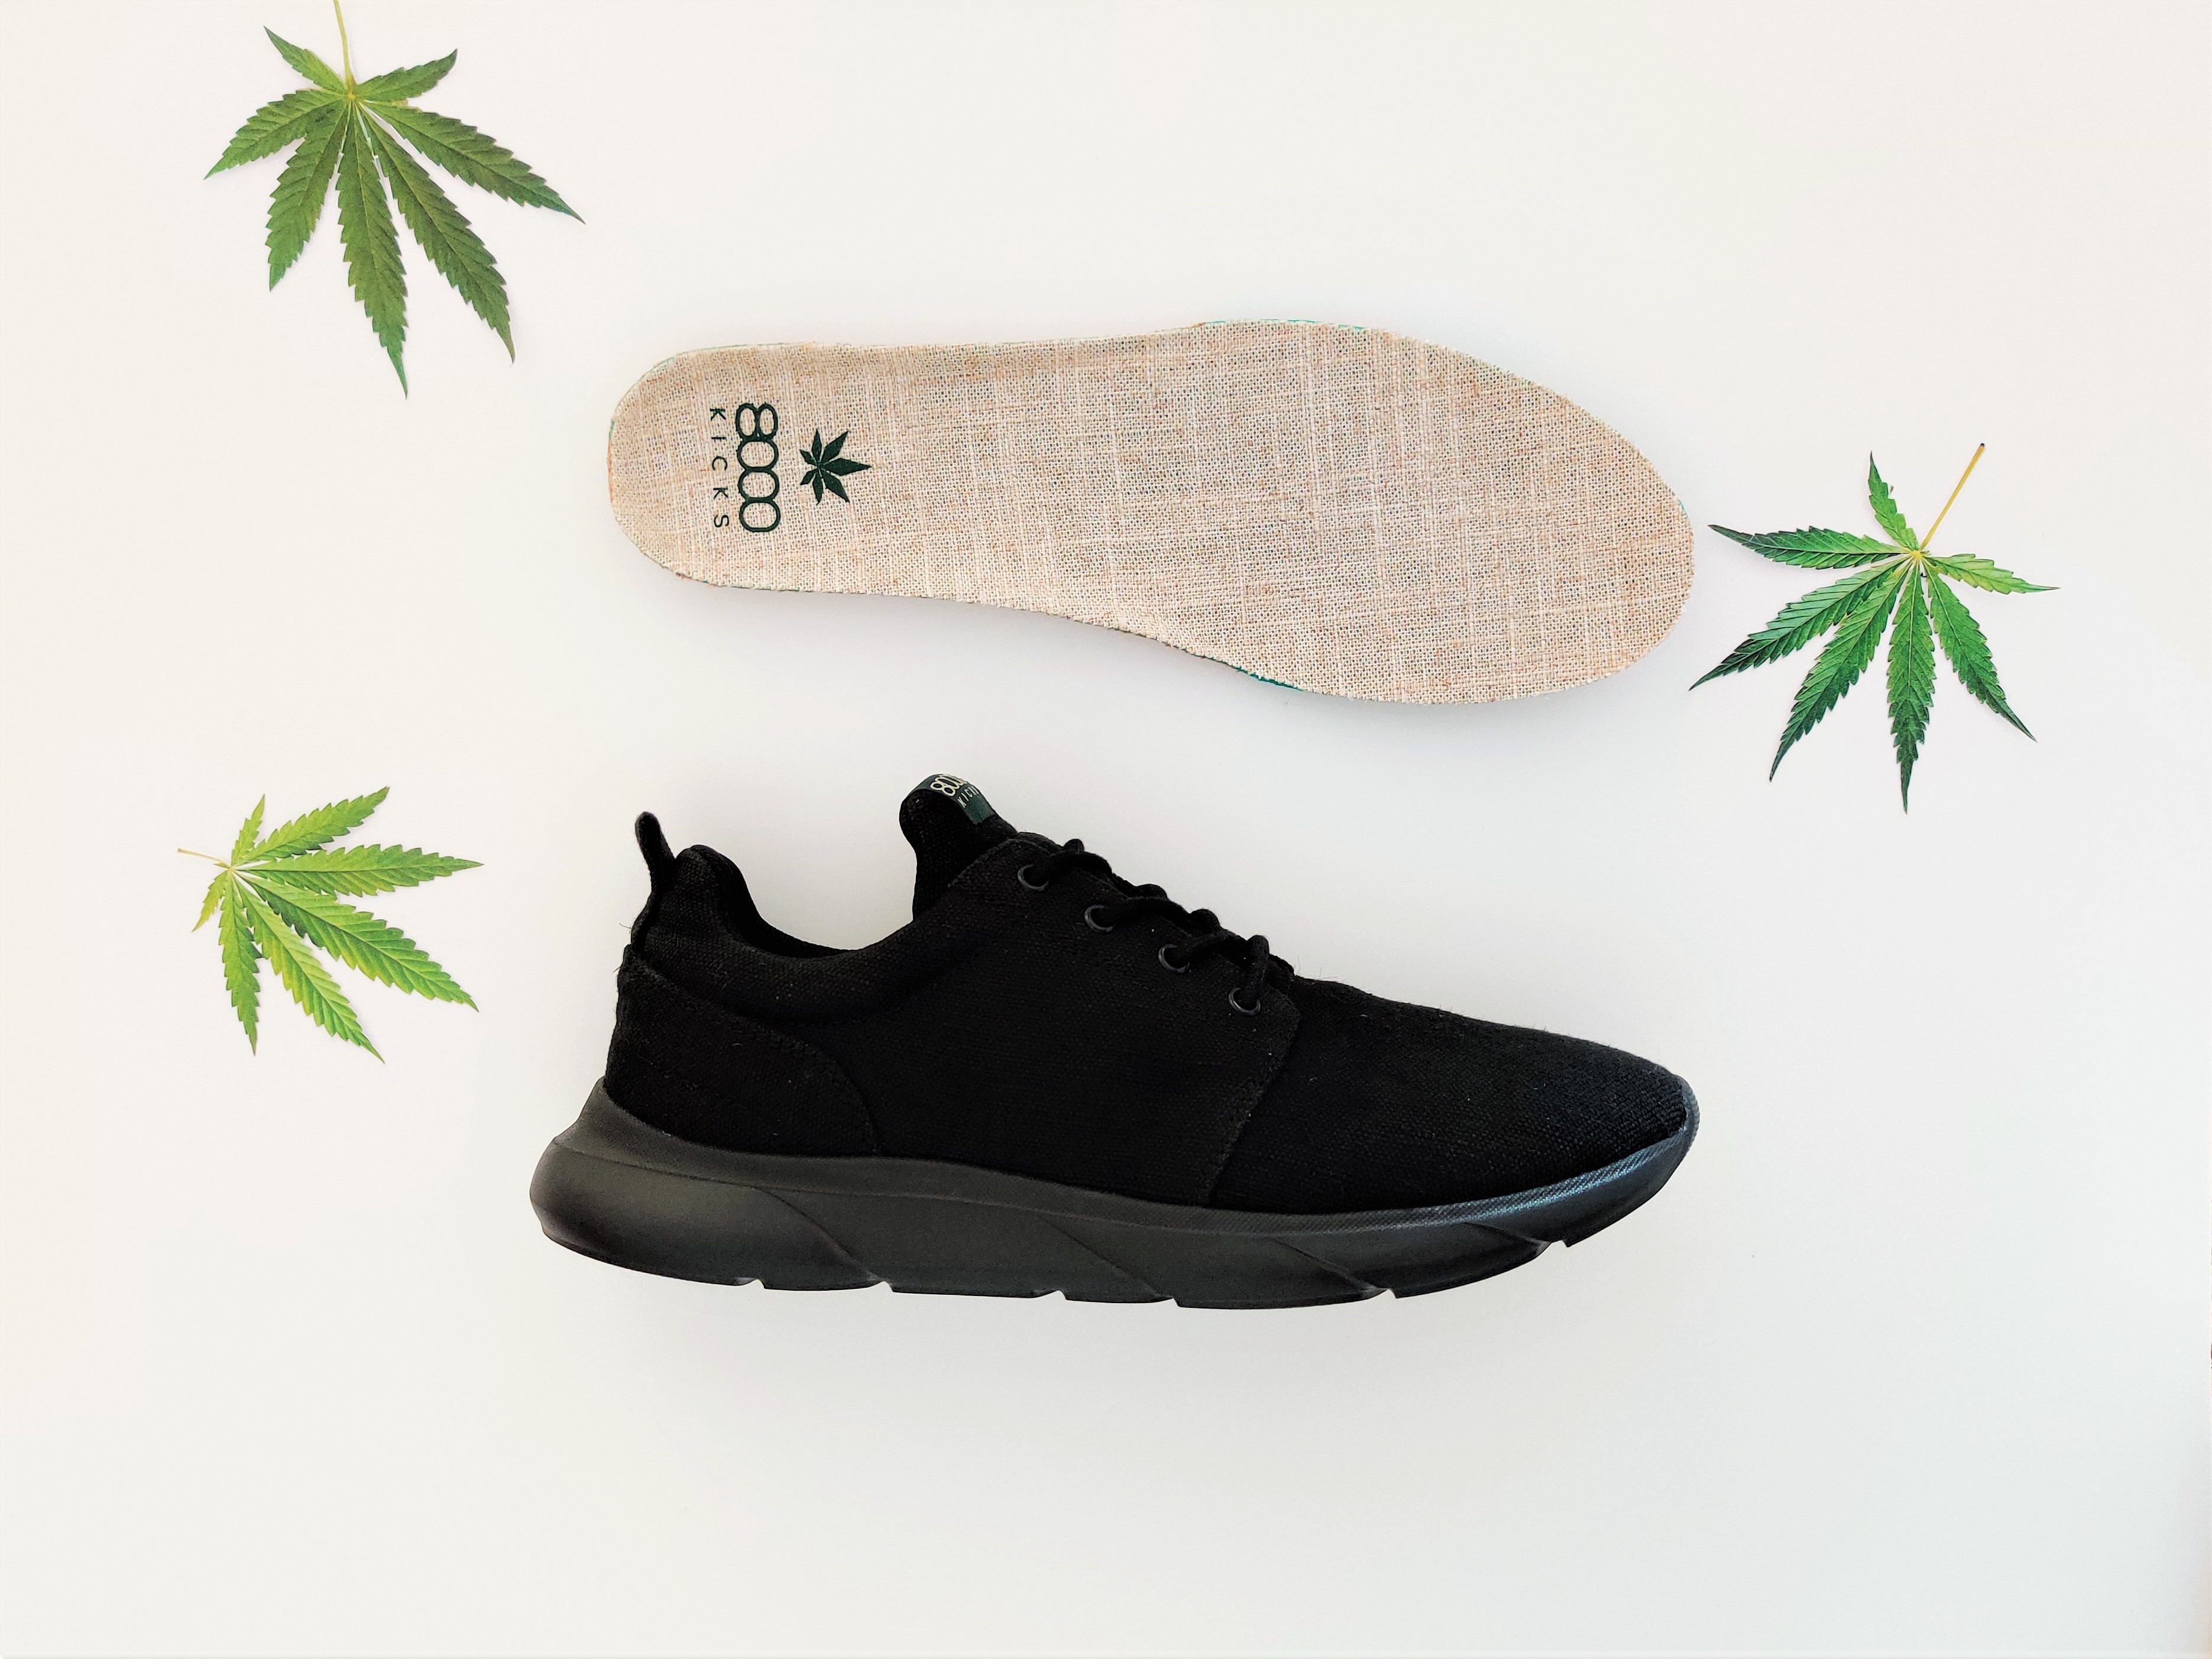 The 1st waterproof cannabis sneakers - Full Black